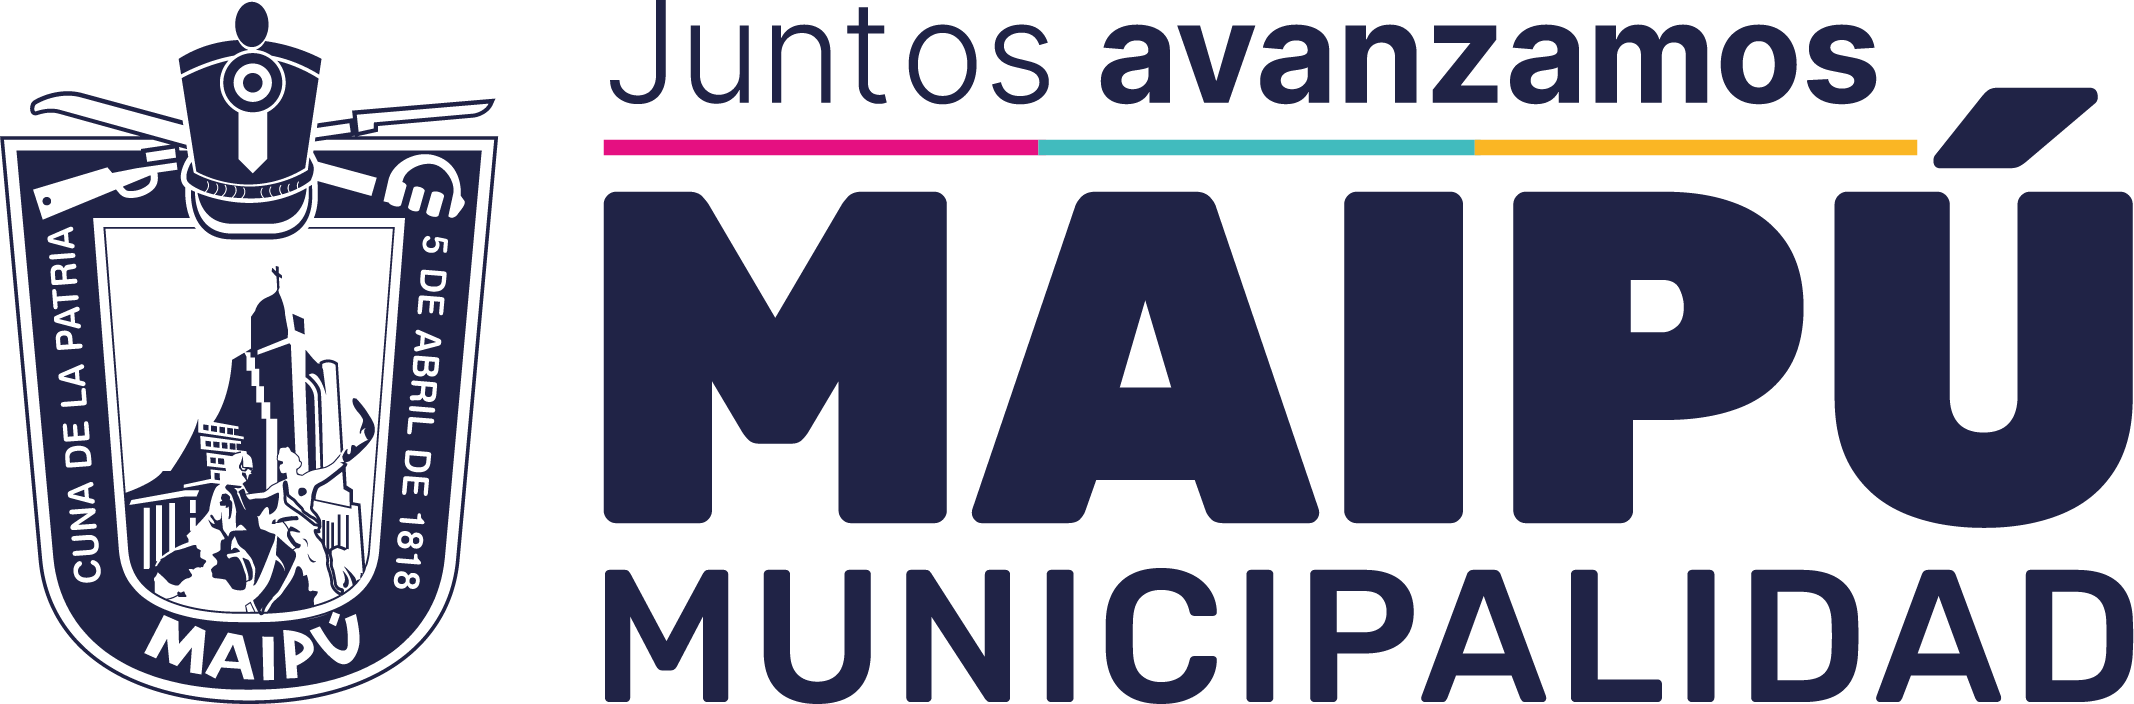 Municipalidad Maipú